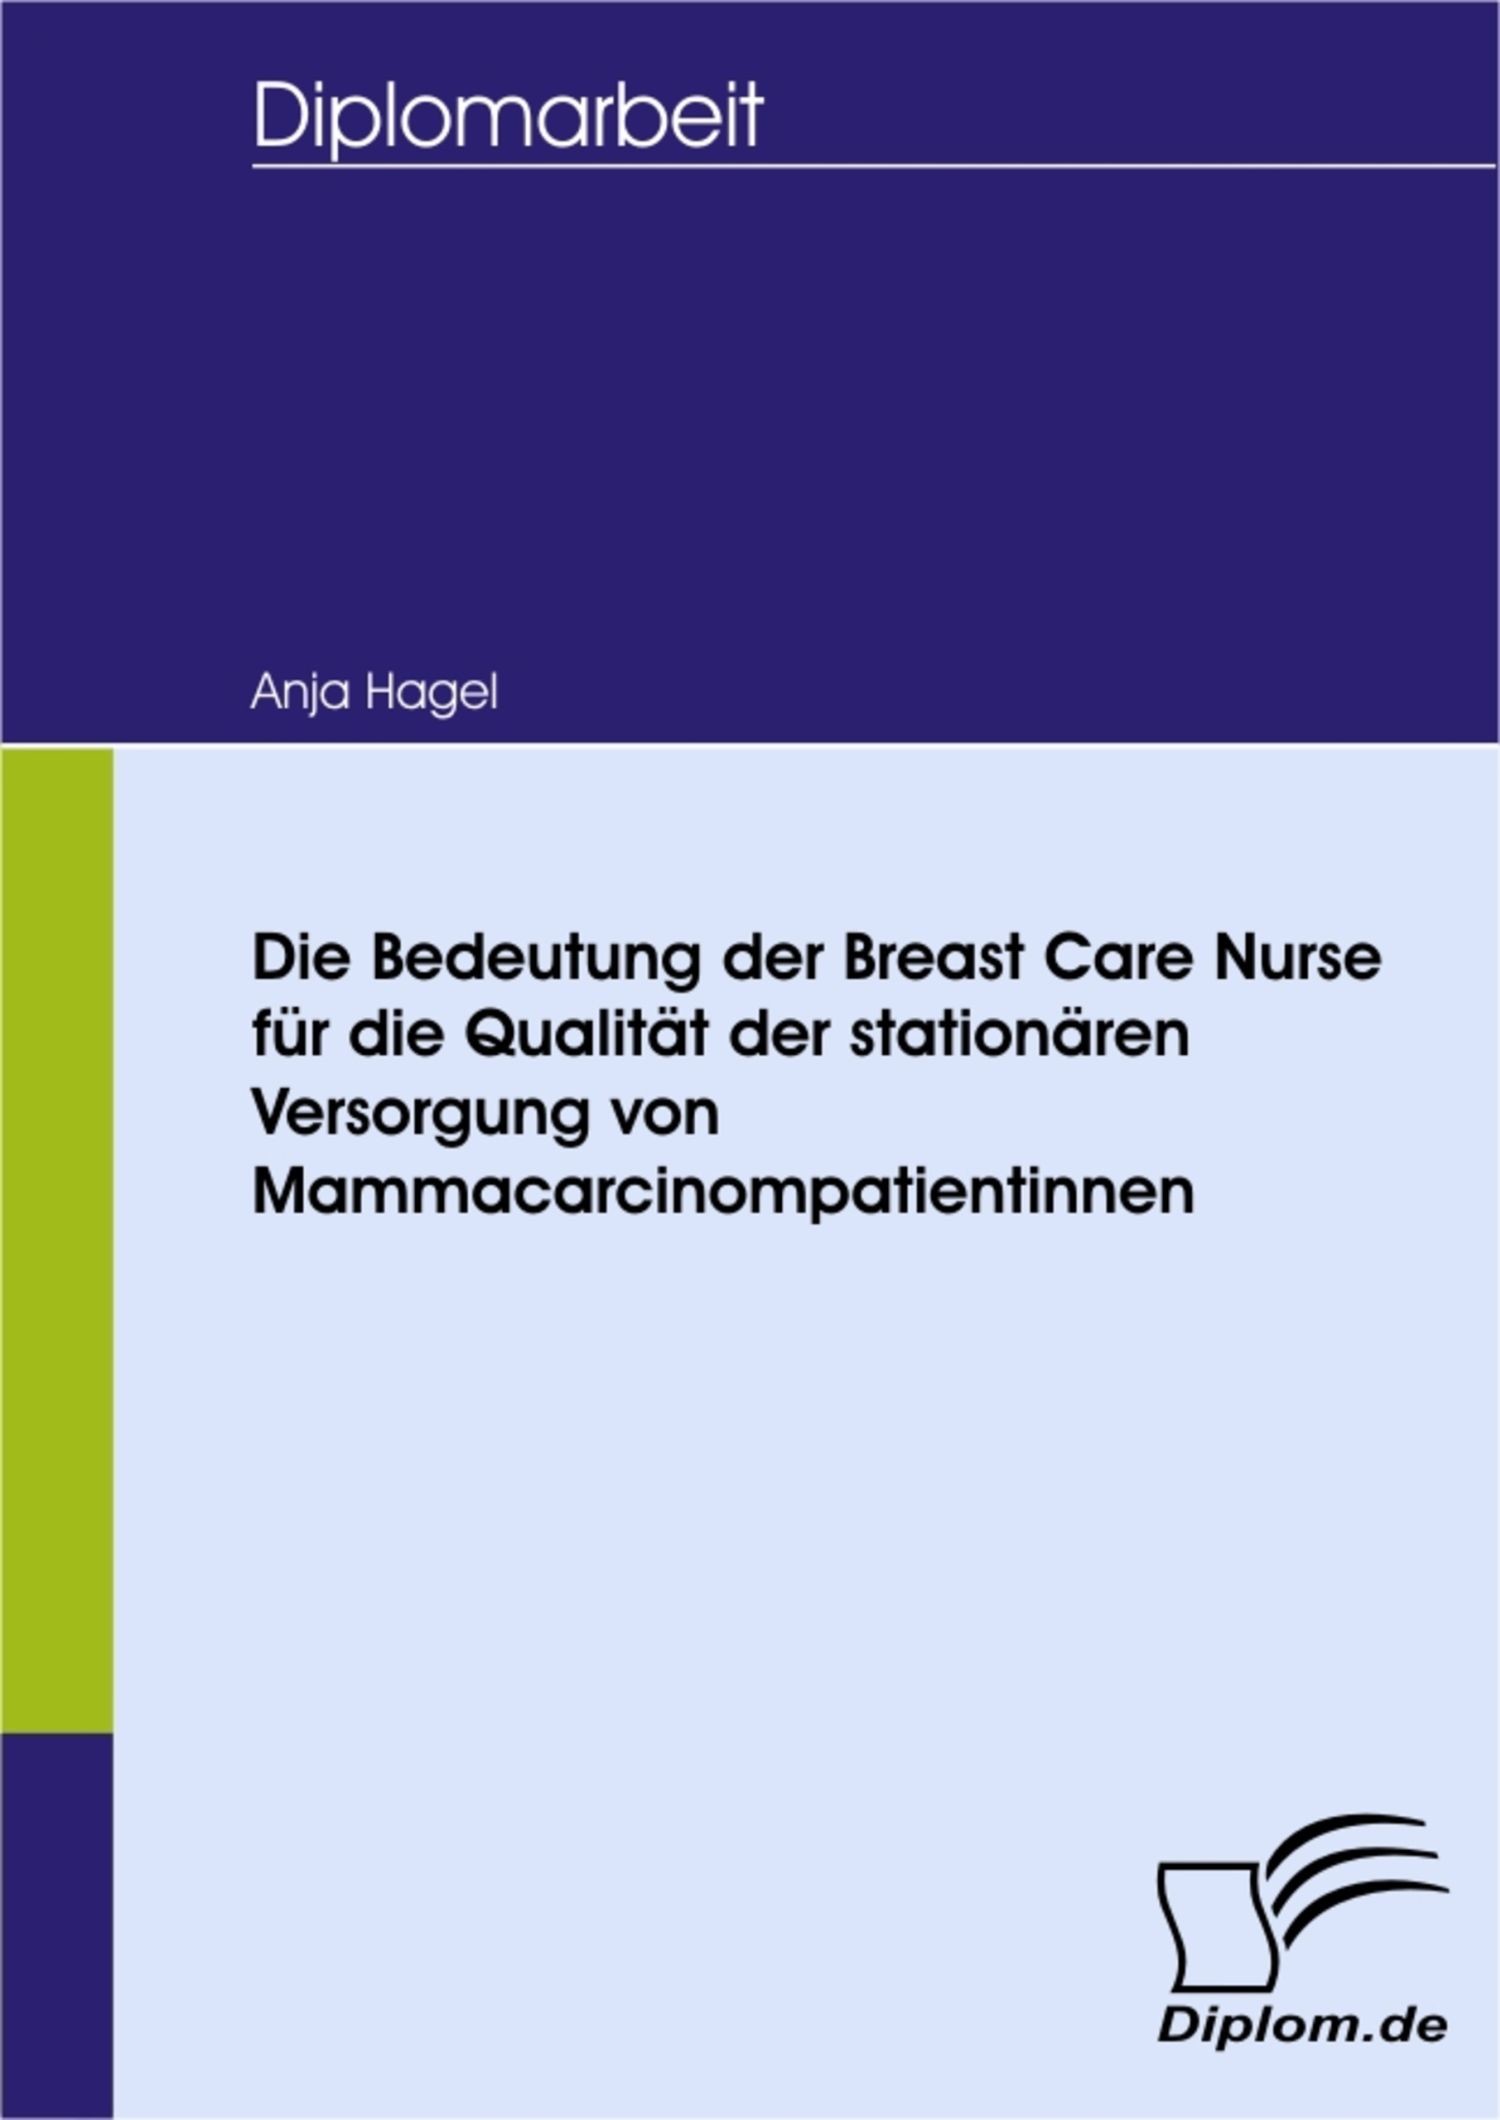 Die Bedeutung der Breast Care Nurse für die Qualität der stationären Versorgung von Mammacarcinompatientinnen